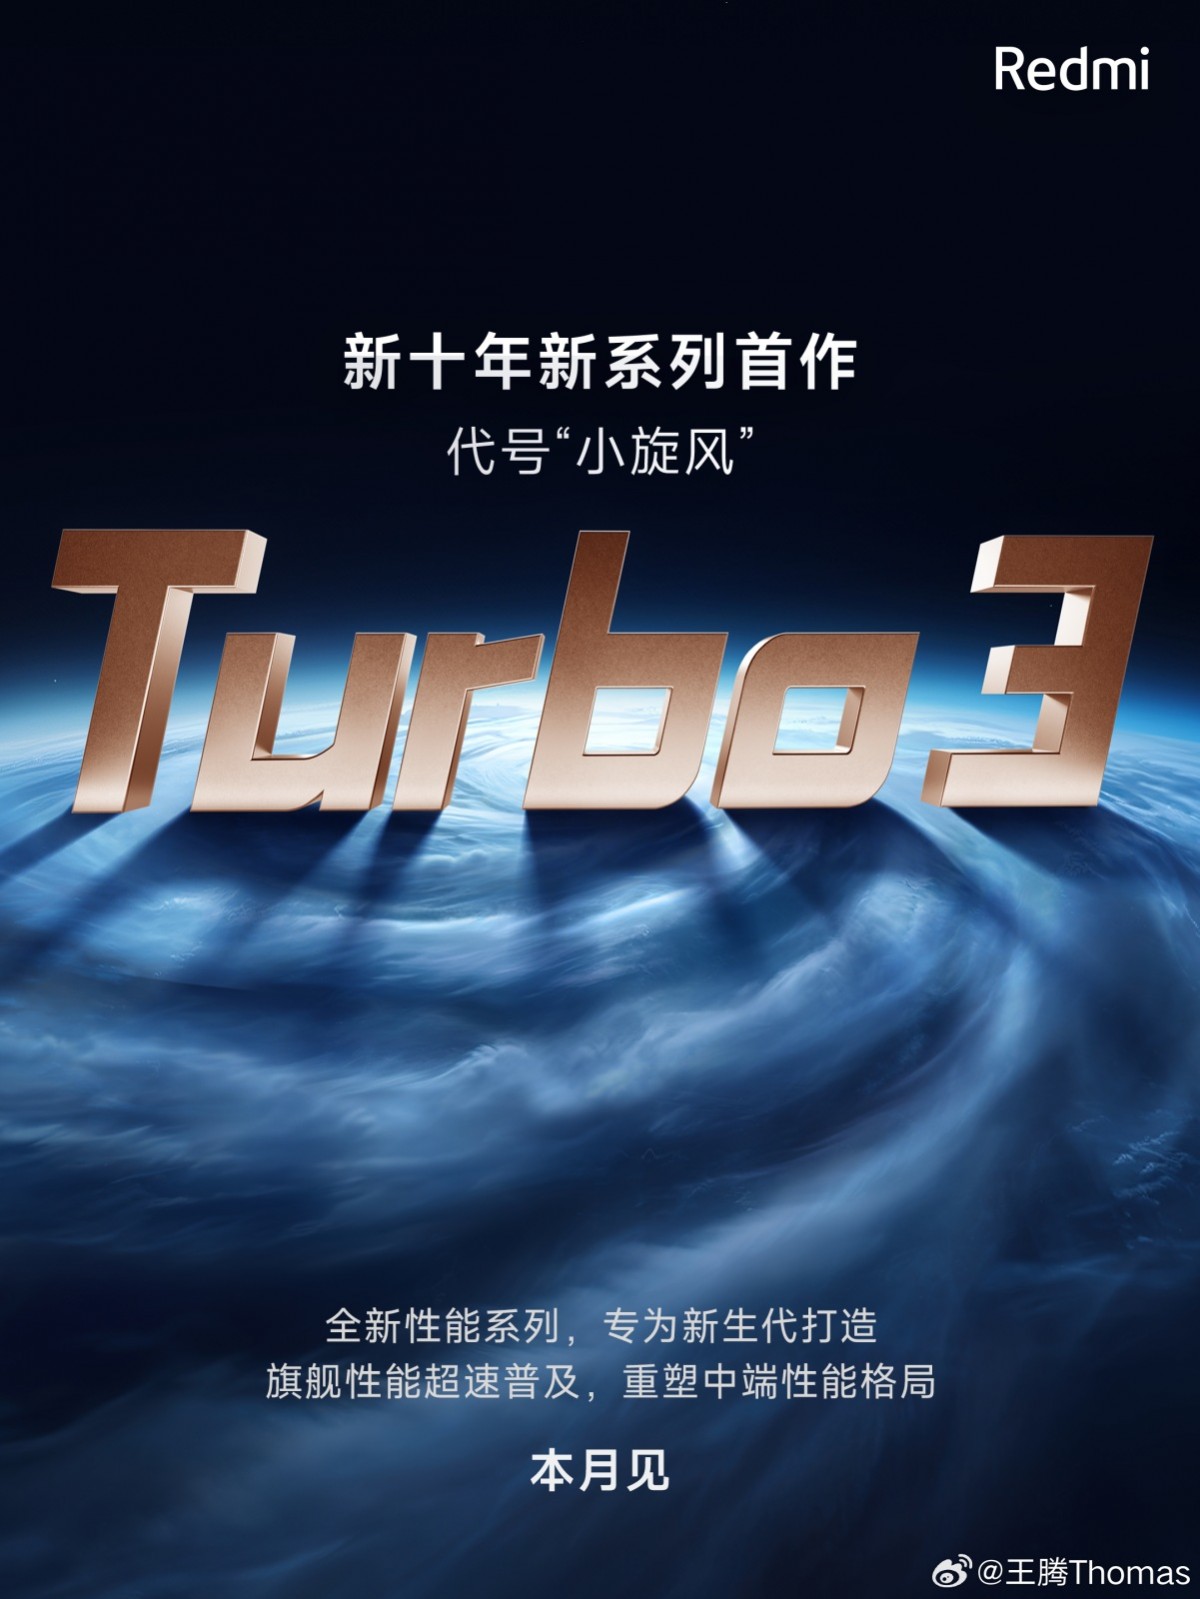 Redmi объявляет Turbo 3 как часть нового поколения флагманской серии производительности